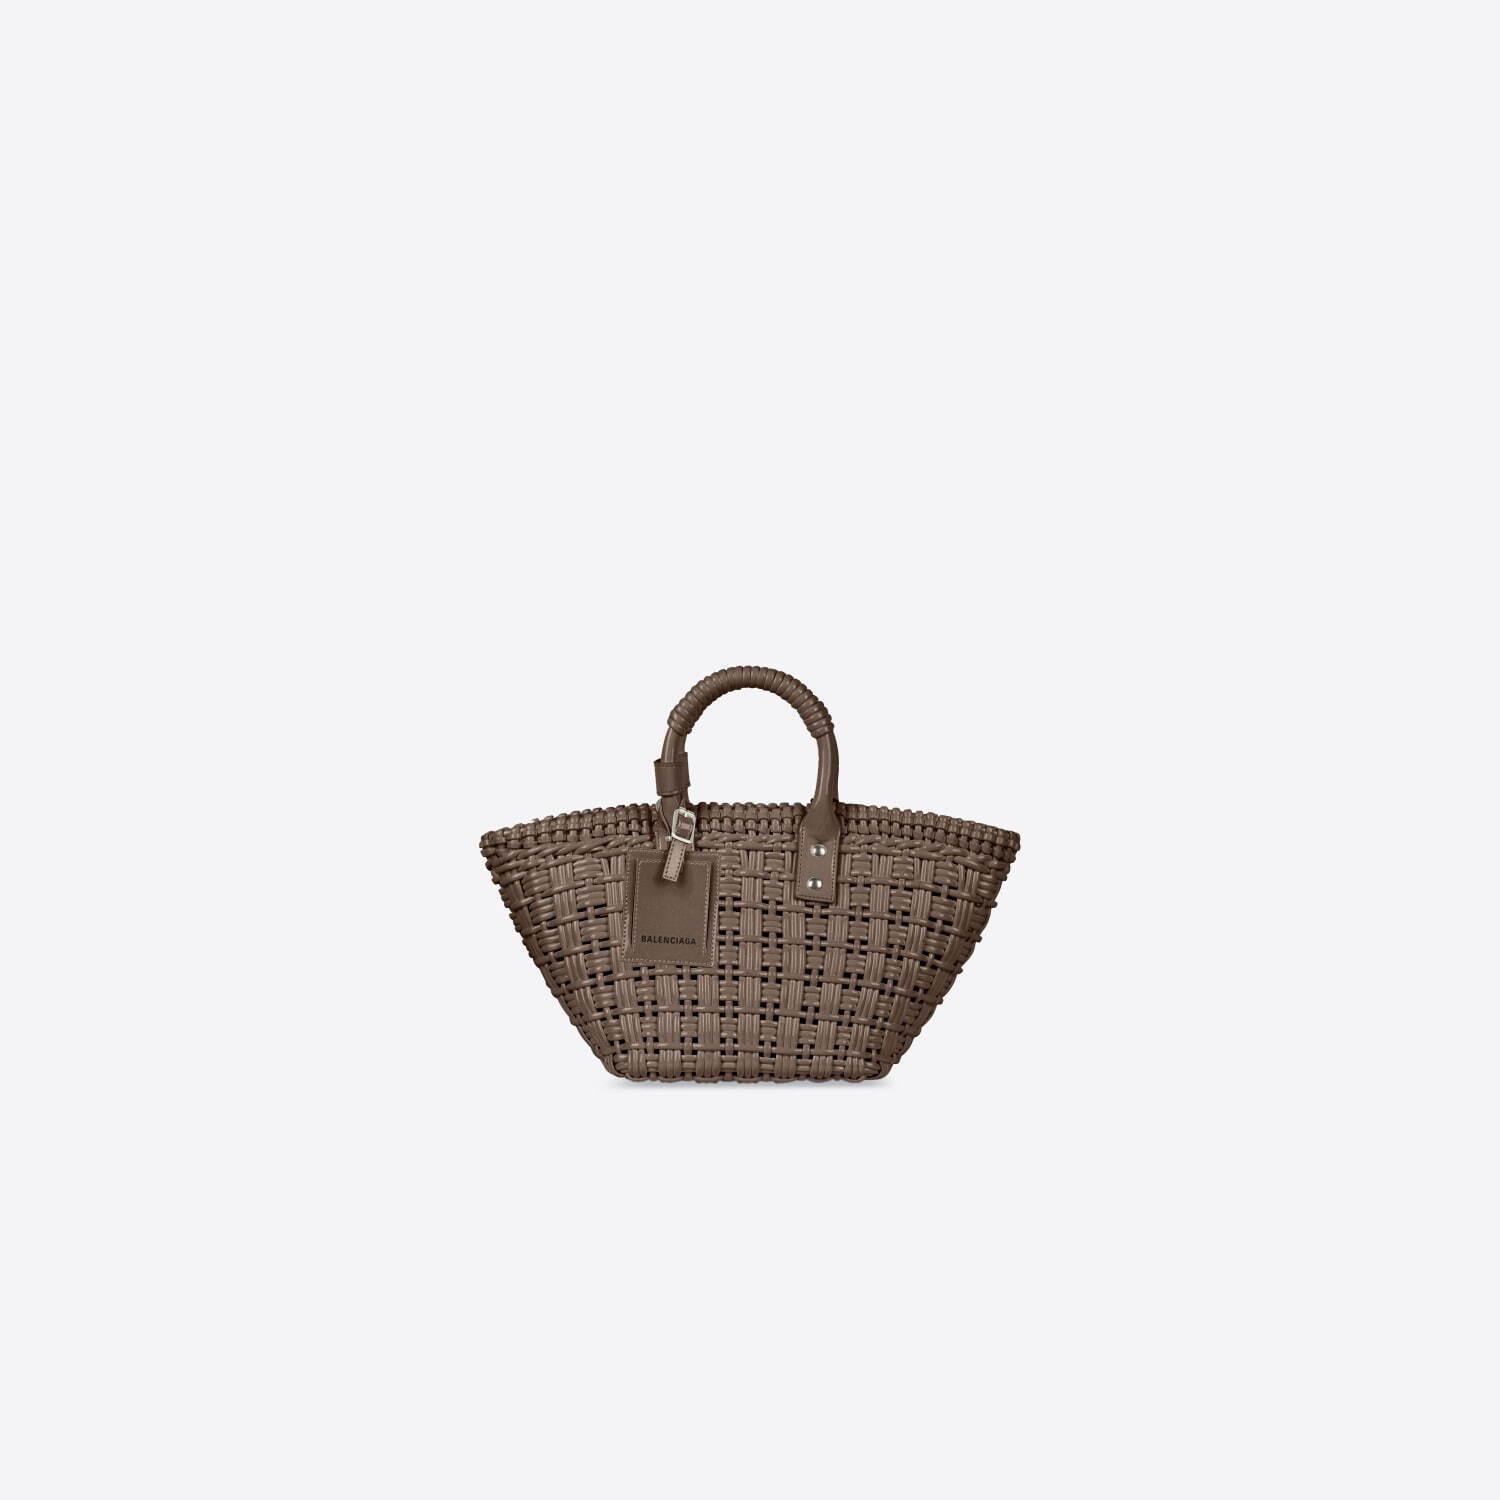 バレンシアガの新作バッグ「ビストロ」“ラタン製家具”から着想を得たバスケットトート コピー